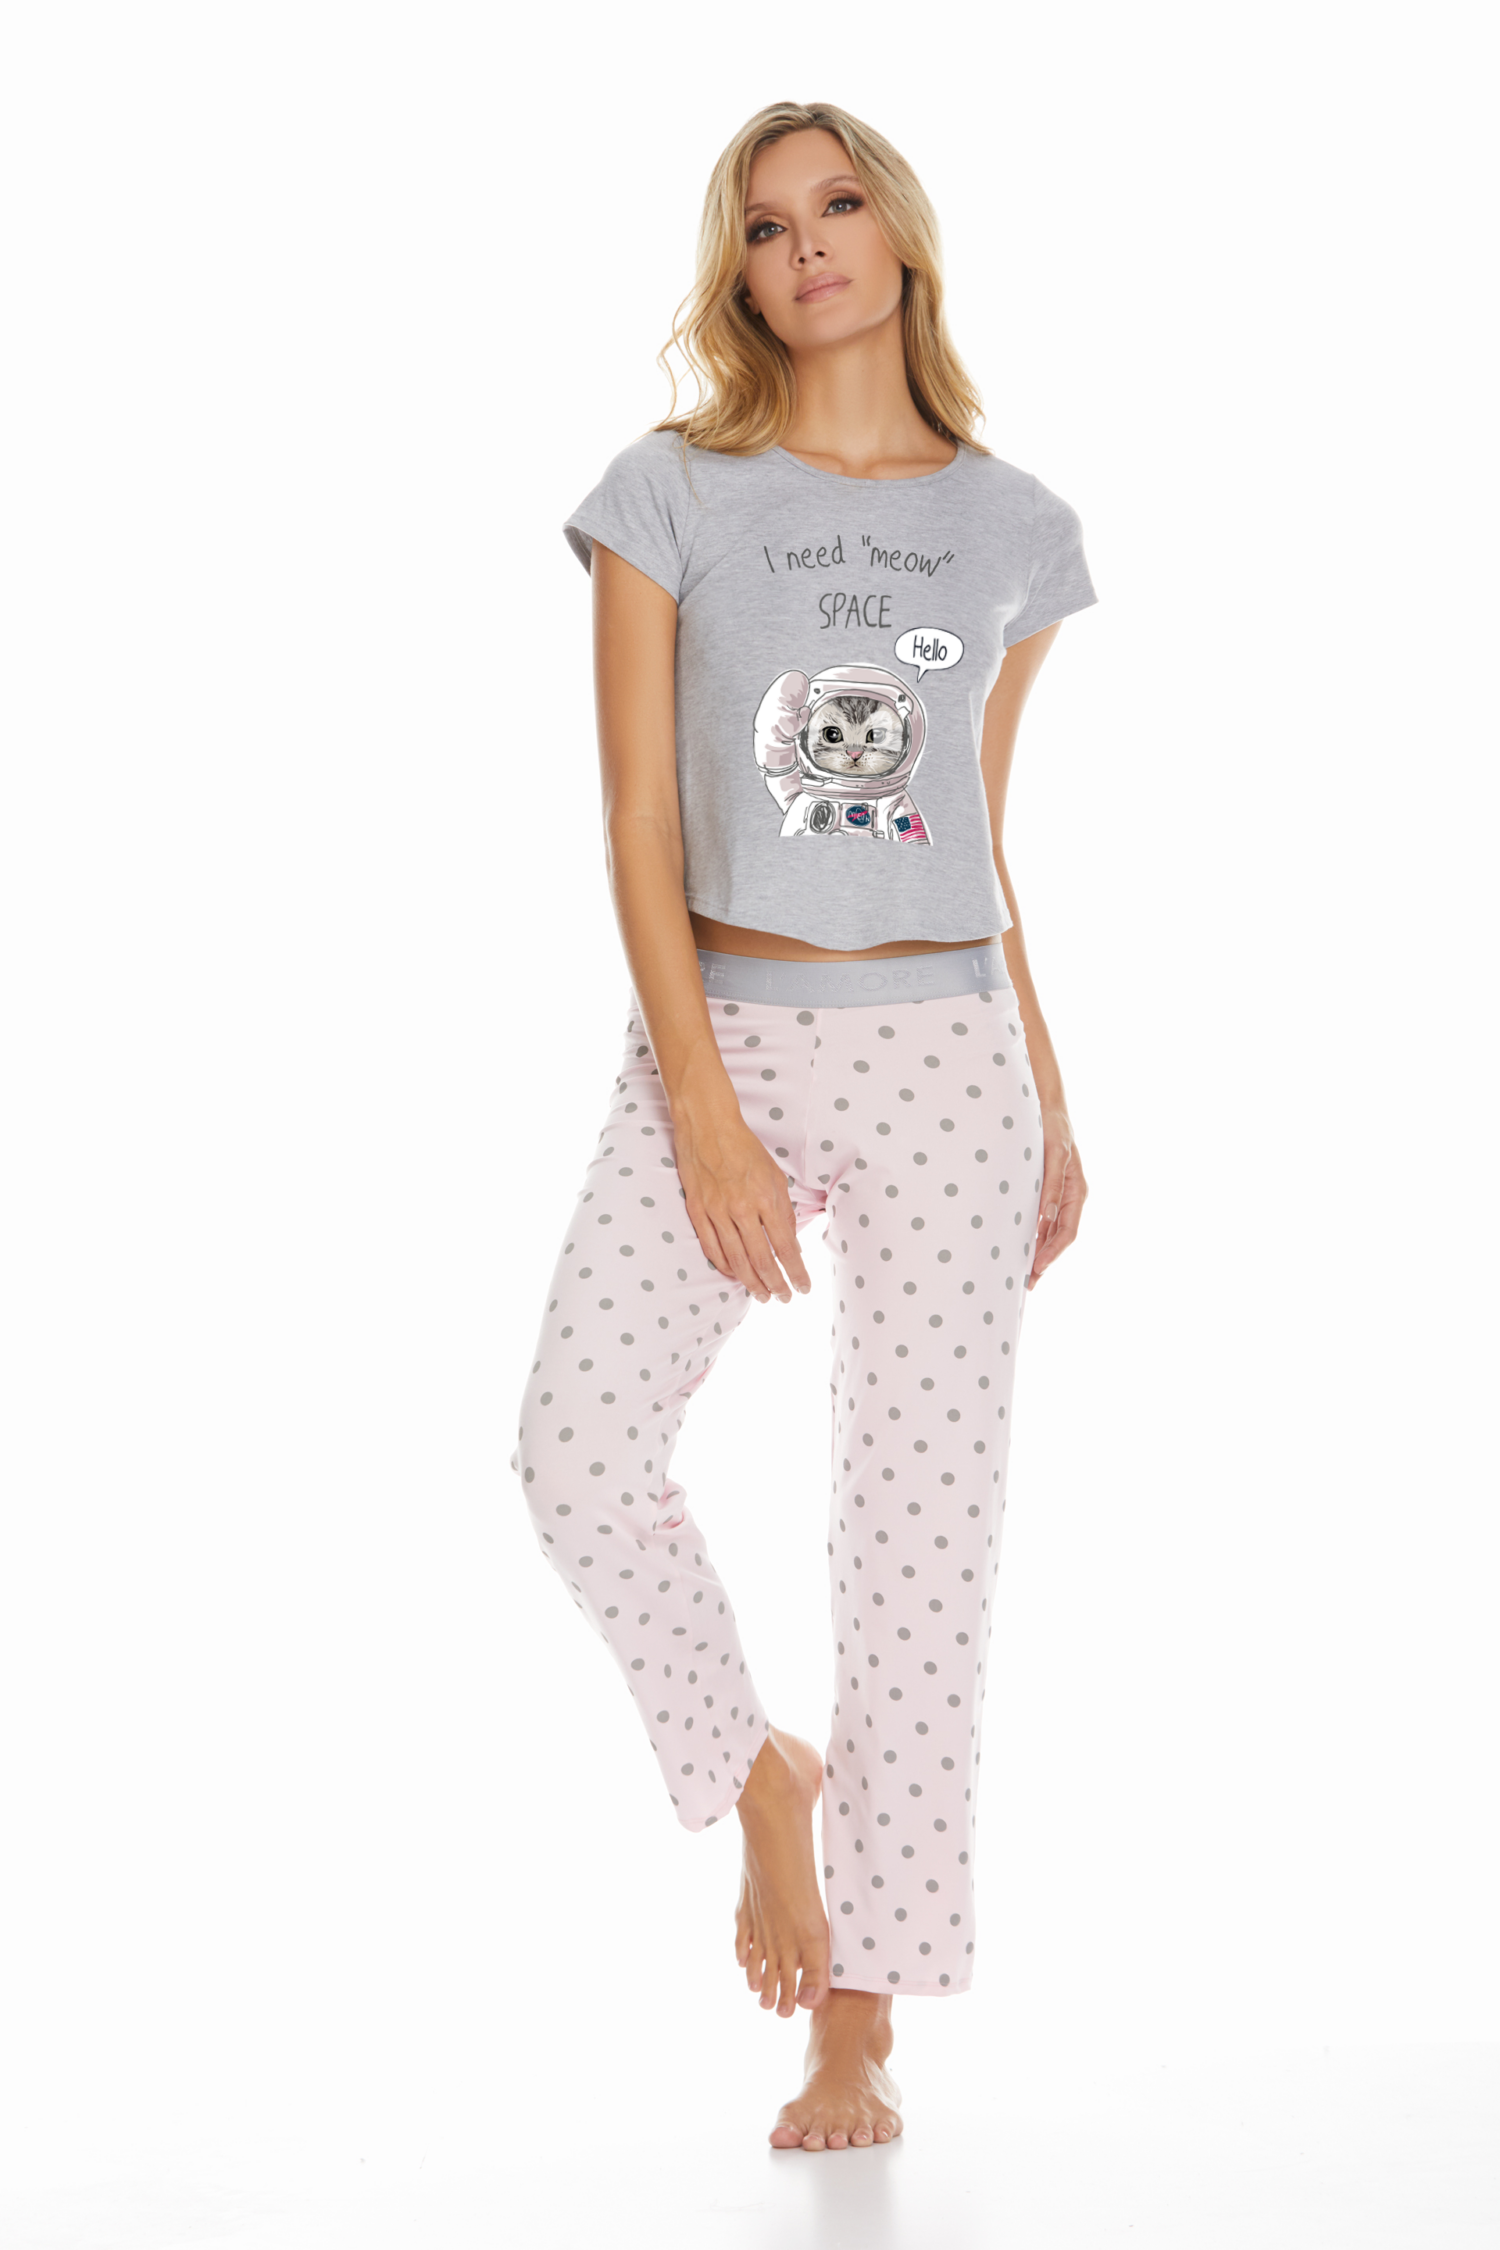 Imagen del producto: Conjunto pantalón elástico rosado bolas gris camisa manga gris meow space